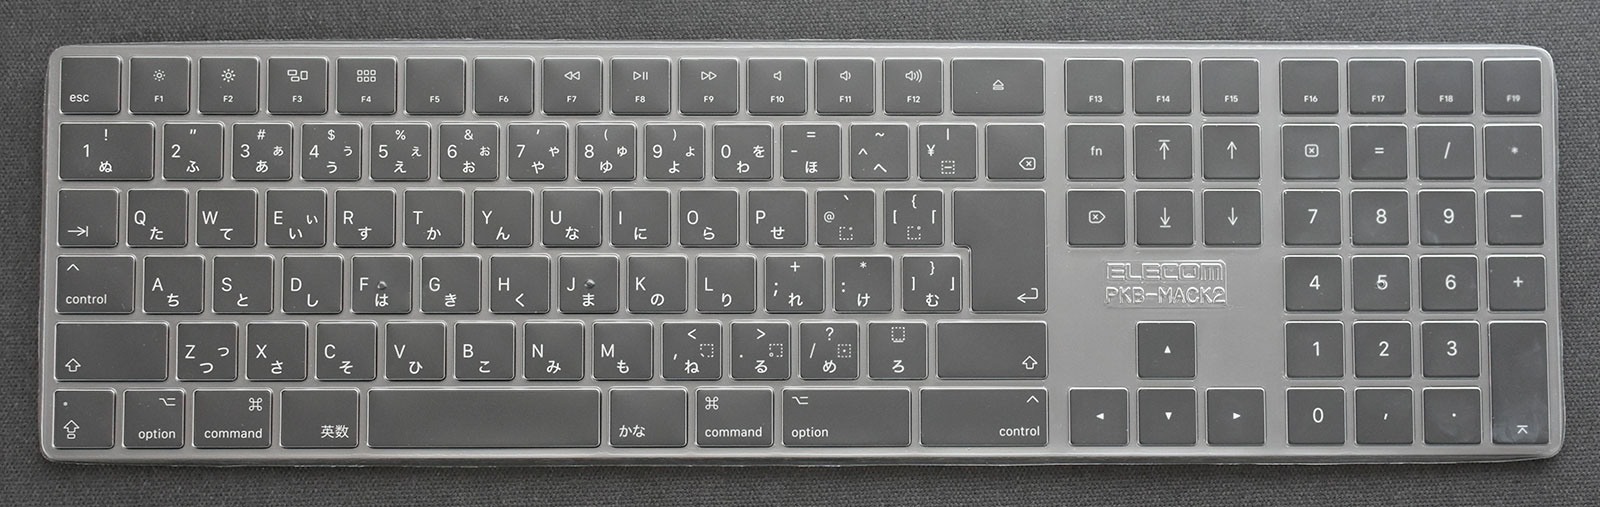 憧れのキーボードApple Magic Keyboard 日本語(JIS) スペースグレイを 